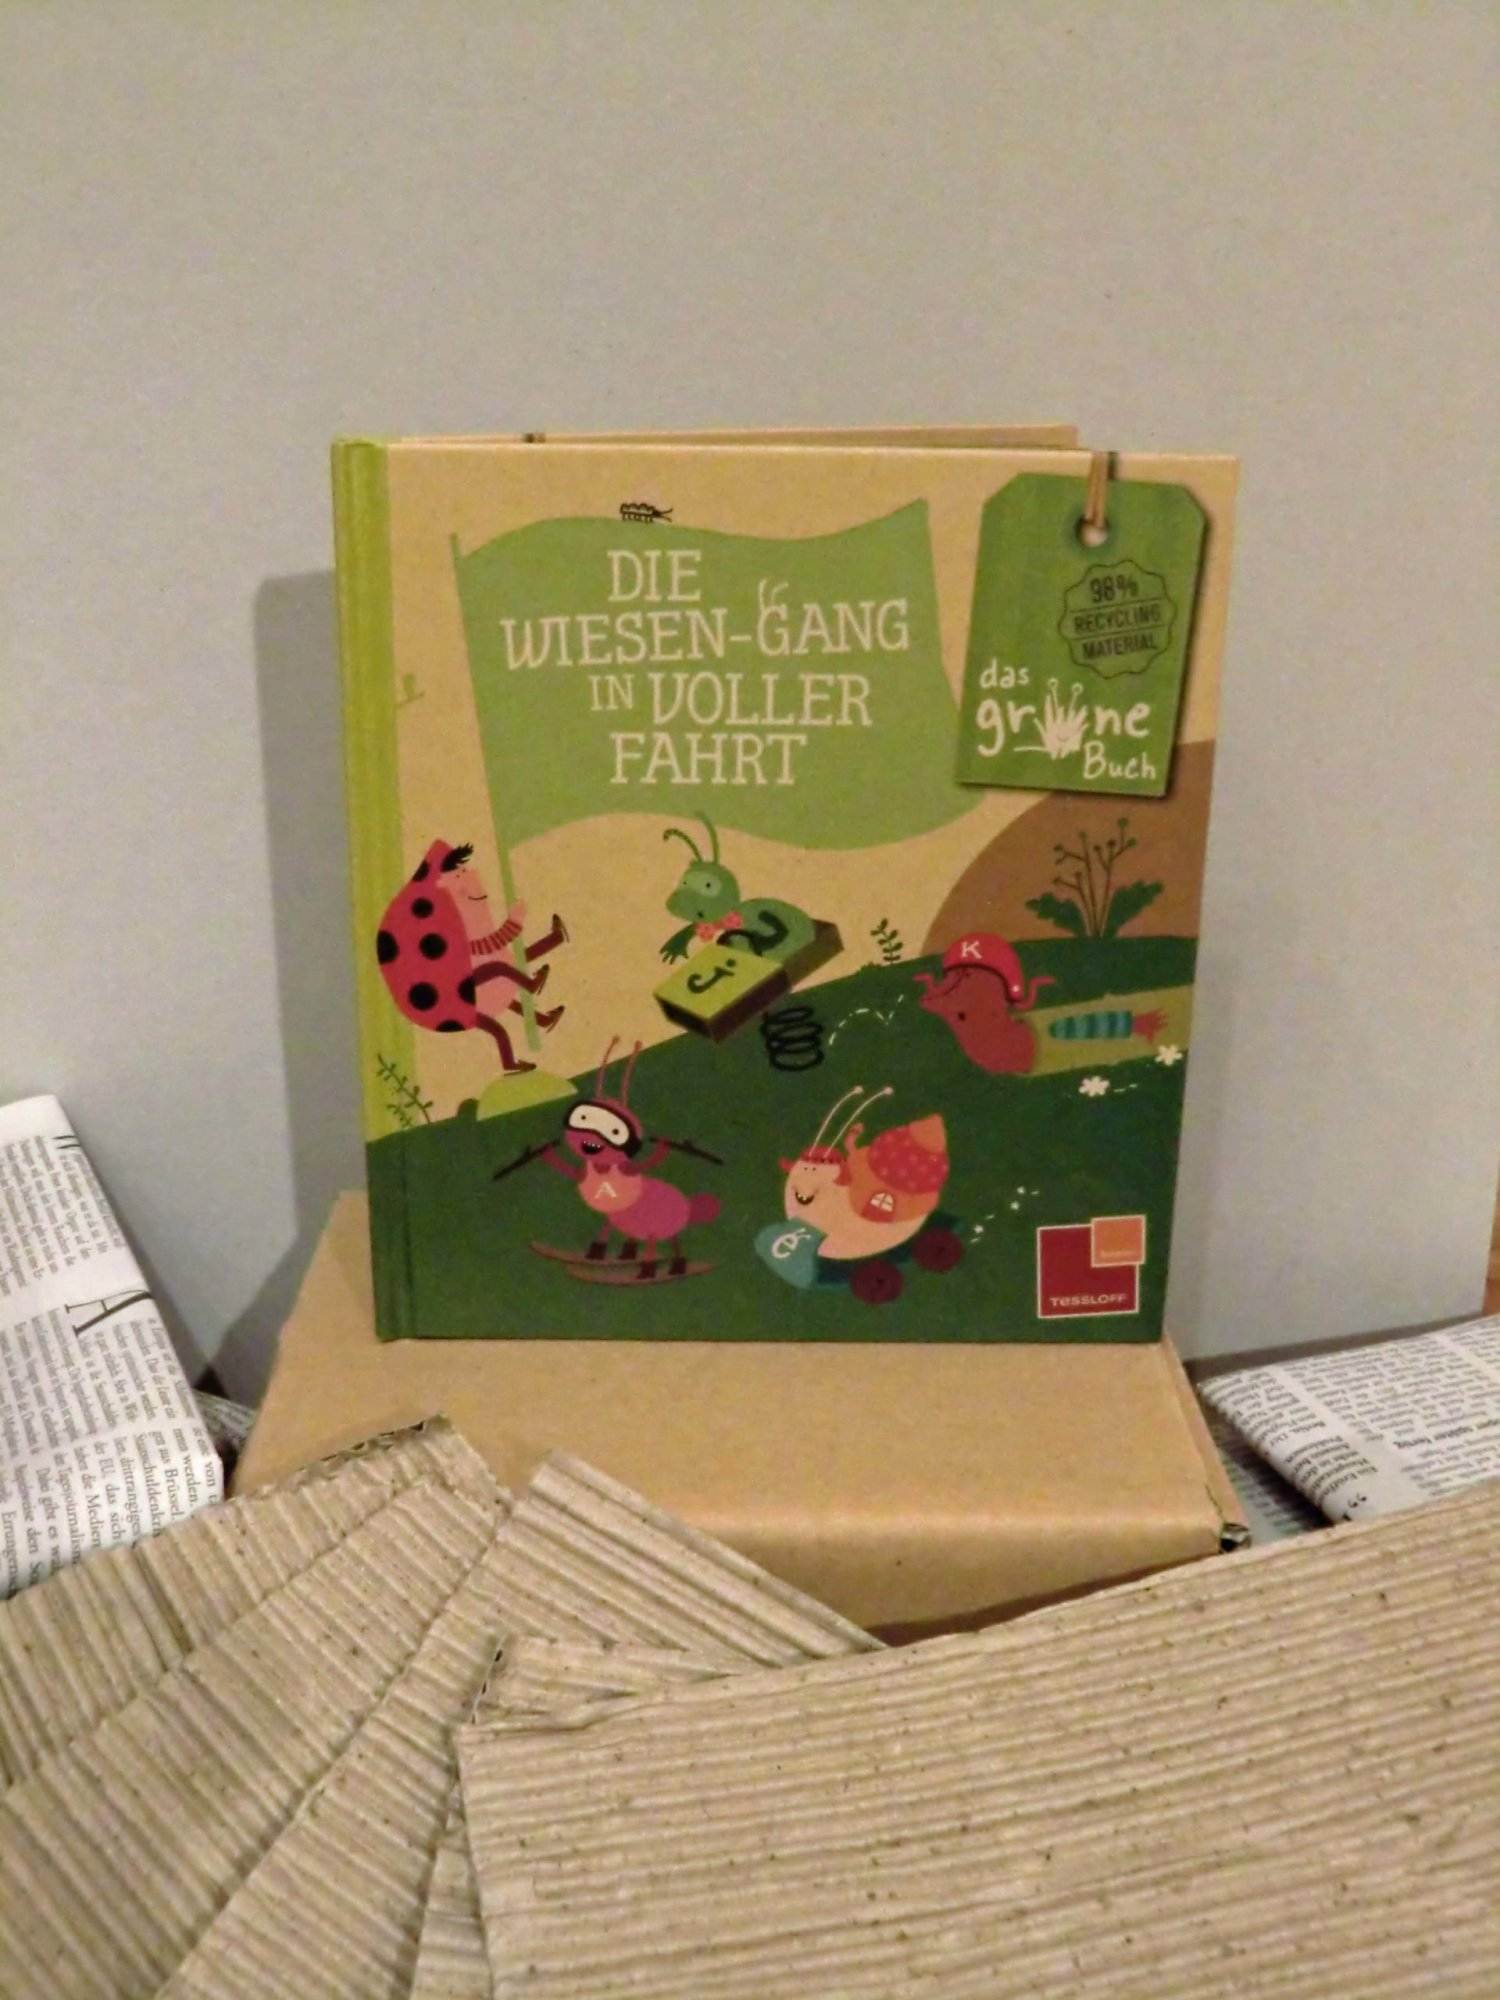 Eine umweltfreundliche Kinderbuchbox.